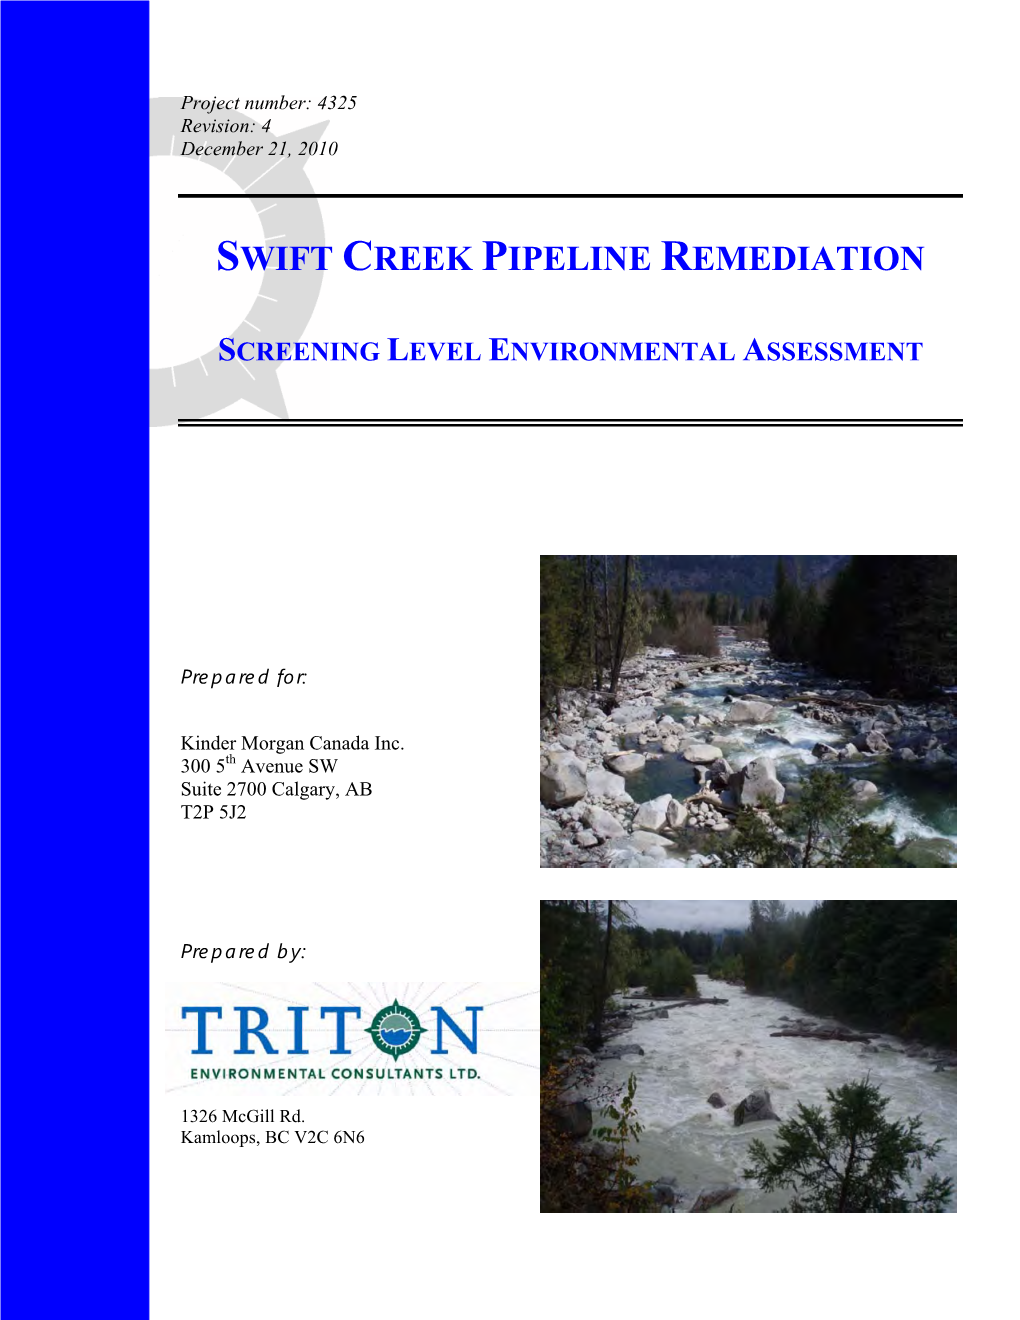 Swift Creek Pipeline Remediation